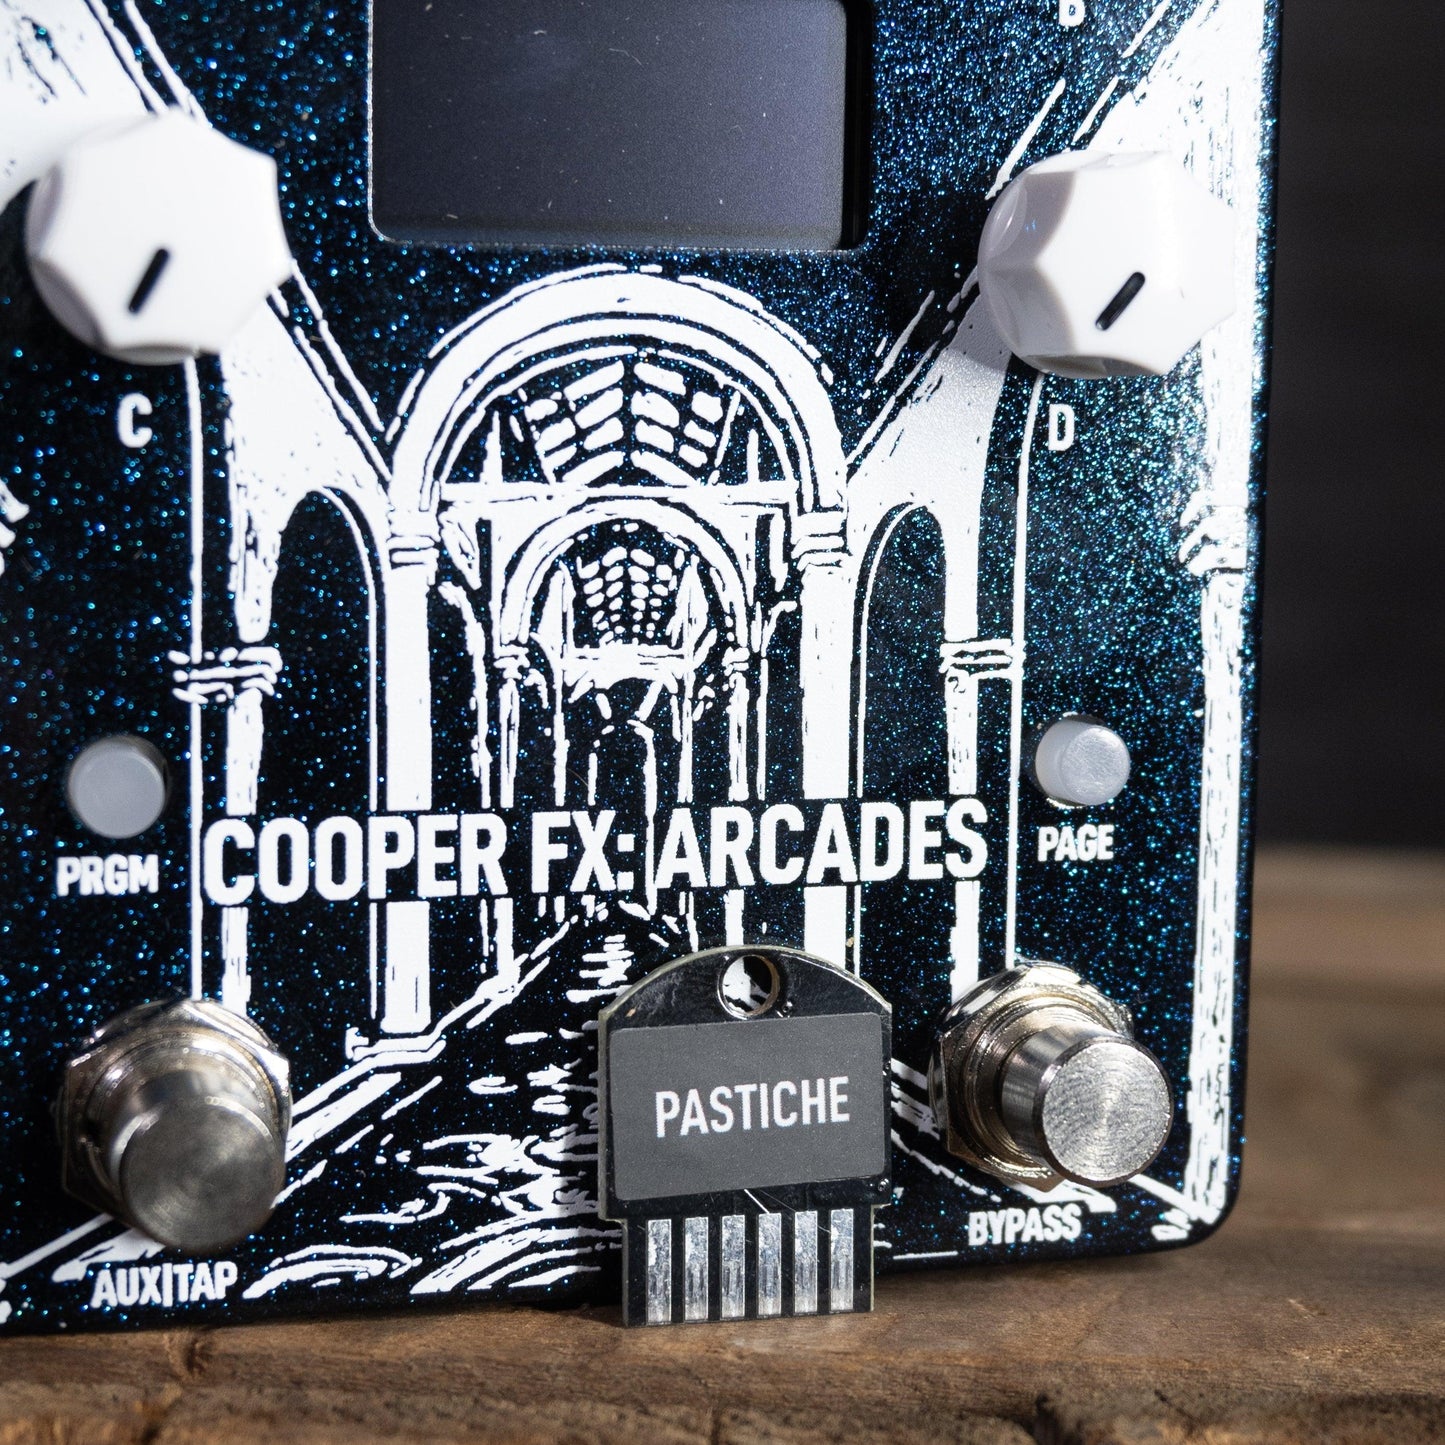 Cooper FX Arcades w/Pastiche Card - Impulse Music Co.